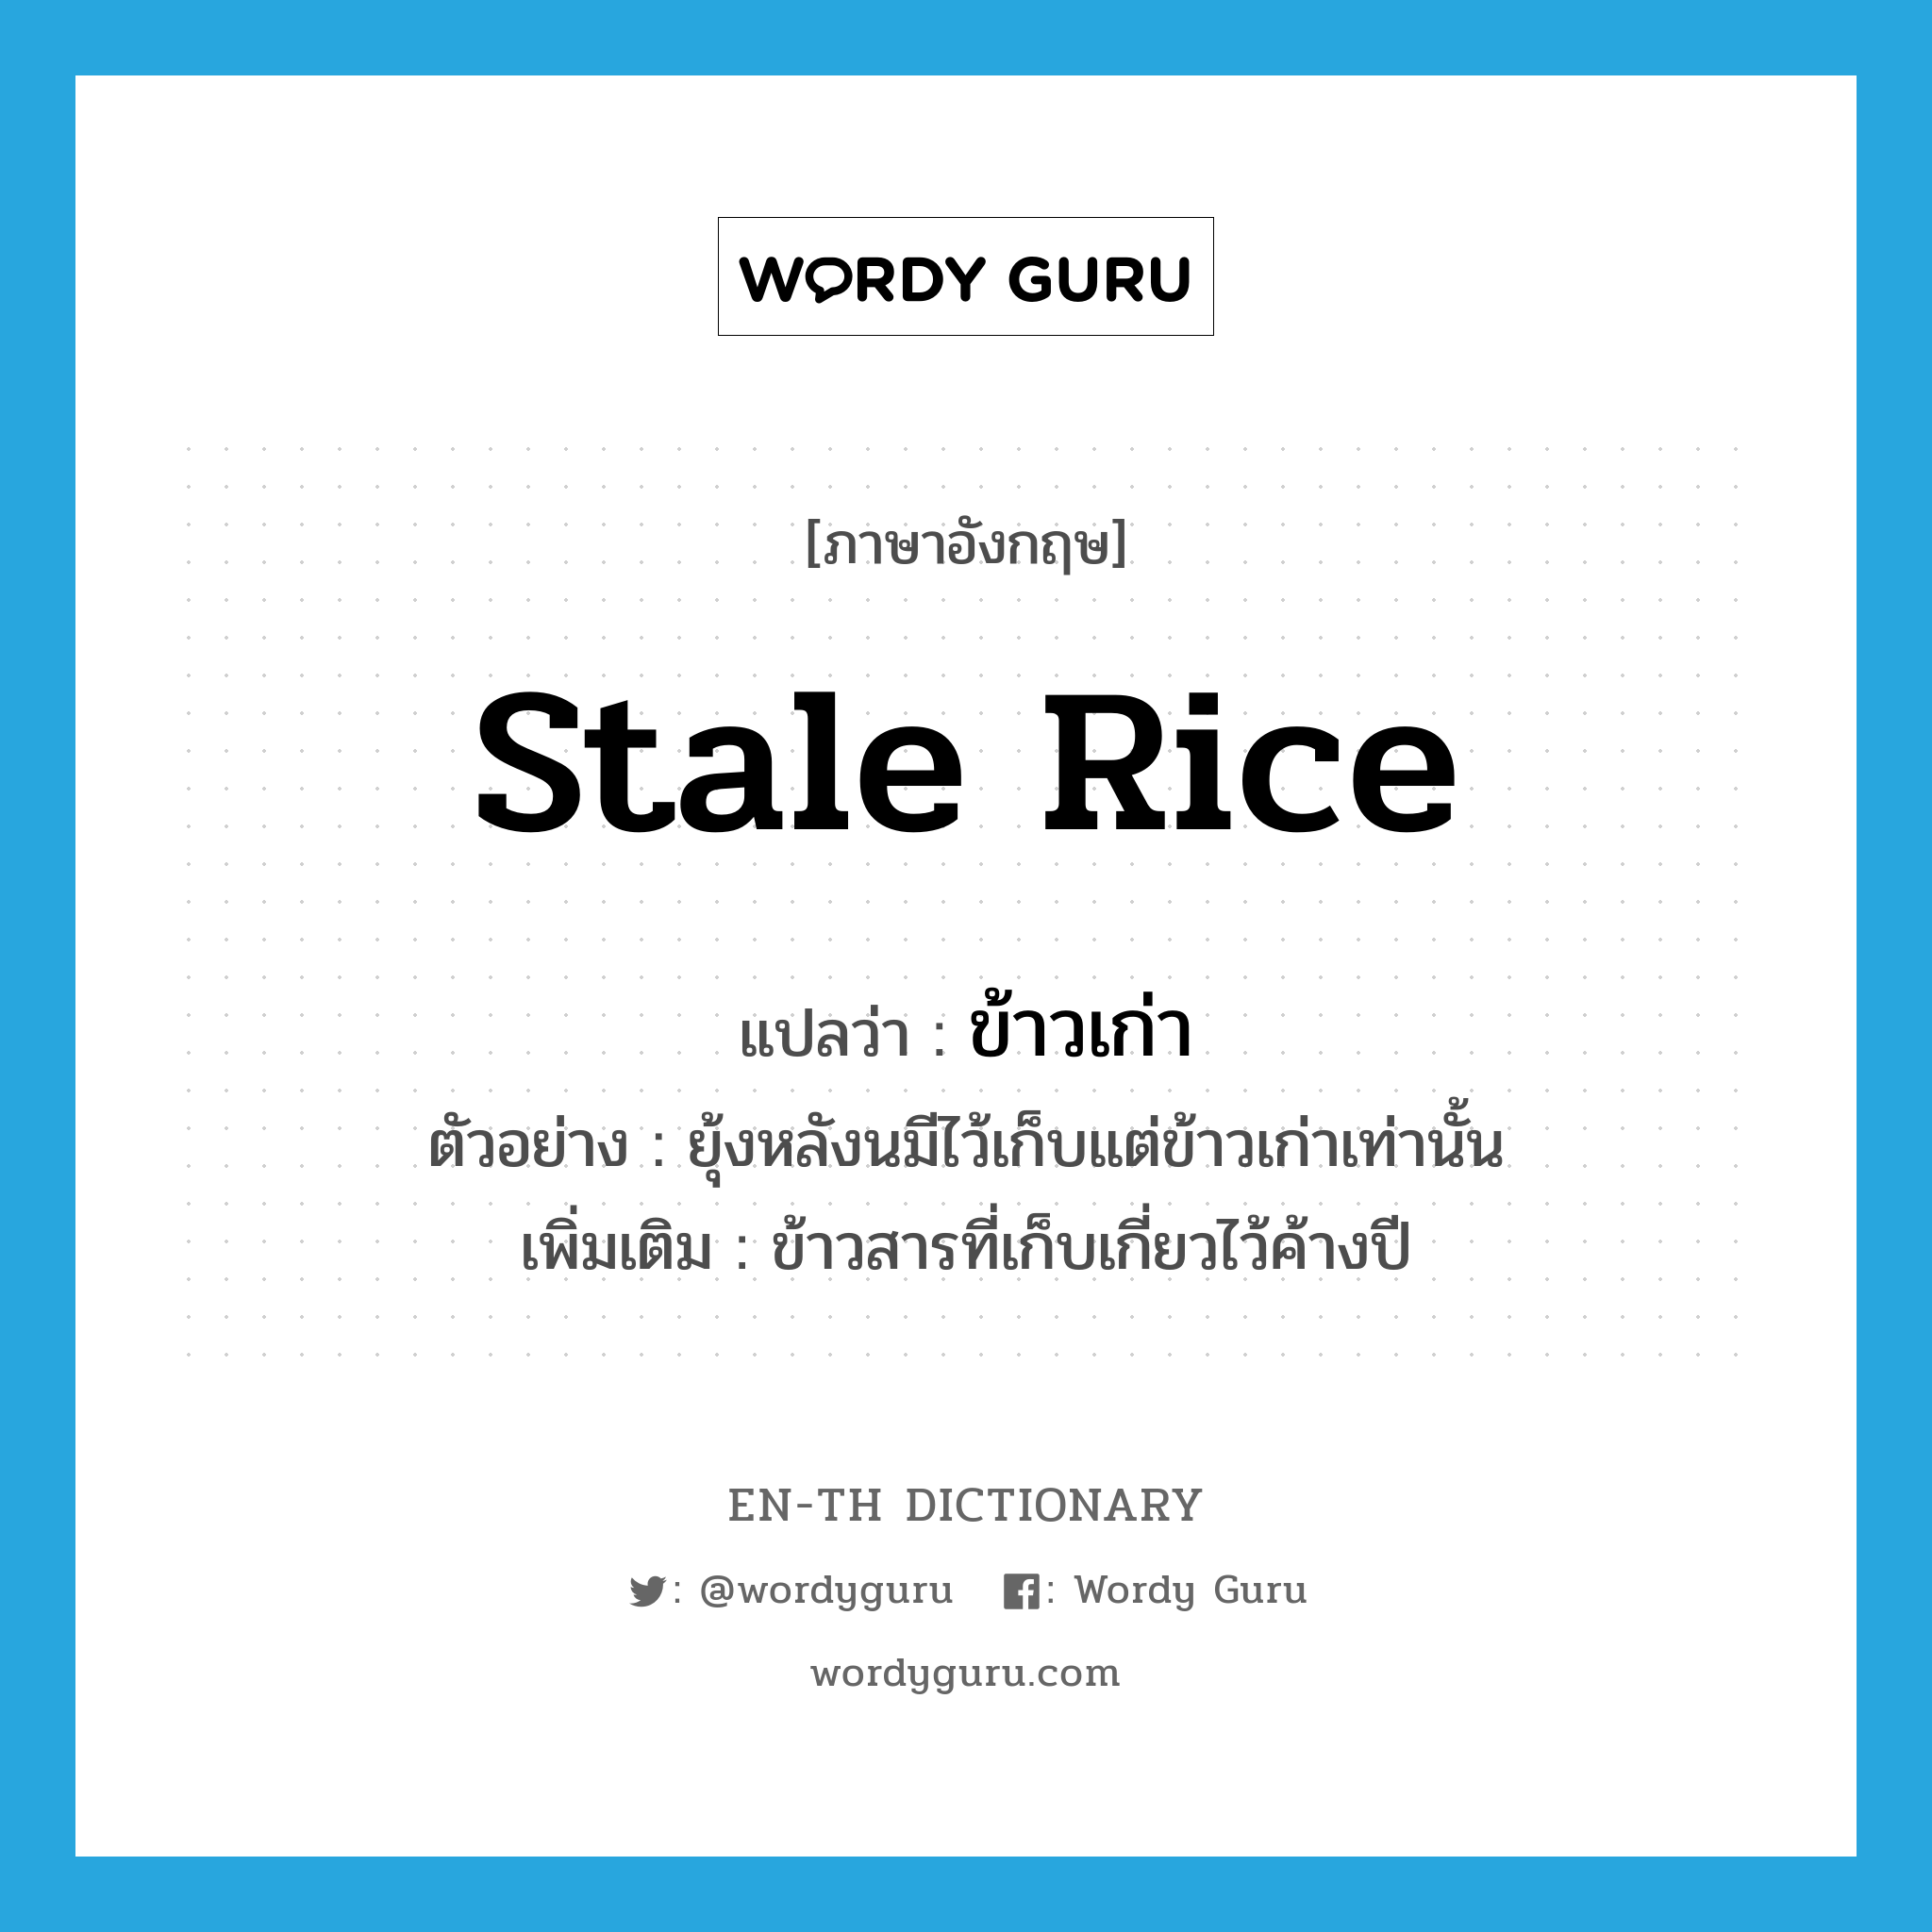 ข้าวเก่า ภาษาอังกฤษ?, คำศัพท์ภาษาอังกฤษ ข้าวเก่า แปลว่า stale rice ประเภท N ตัวอย่าง ยุ้งหลังนมีไว้เก็บแต่ข้าวเก่าเท่านั้น เพิ่มเติม ข้าวสารที่เก็บเกี่ยวไว้ค้างปี หมวด N